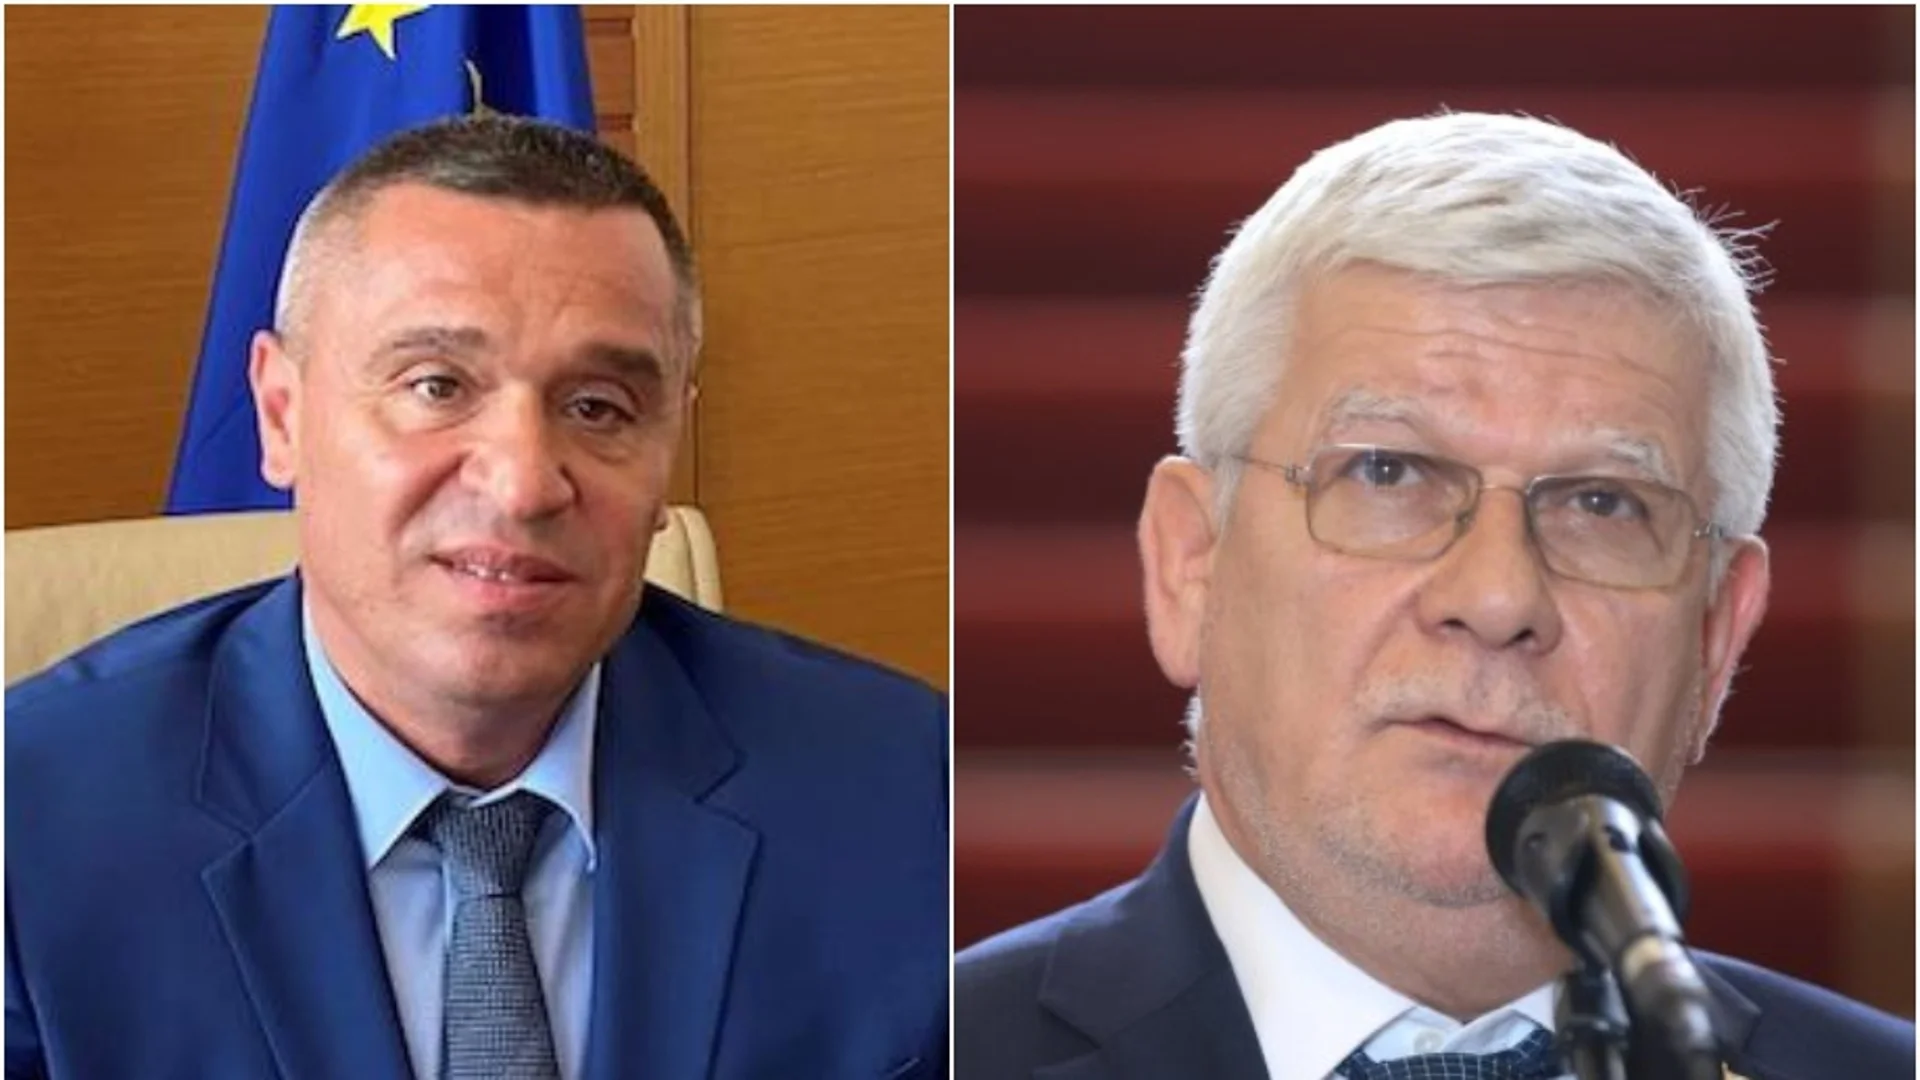 Пореден трус в правителството на Главчев: Още един министър си отива (СНИМКИ)